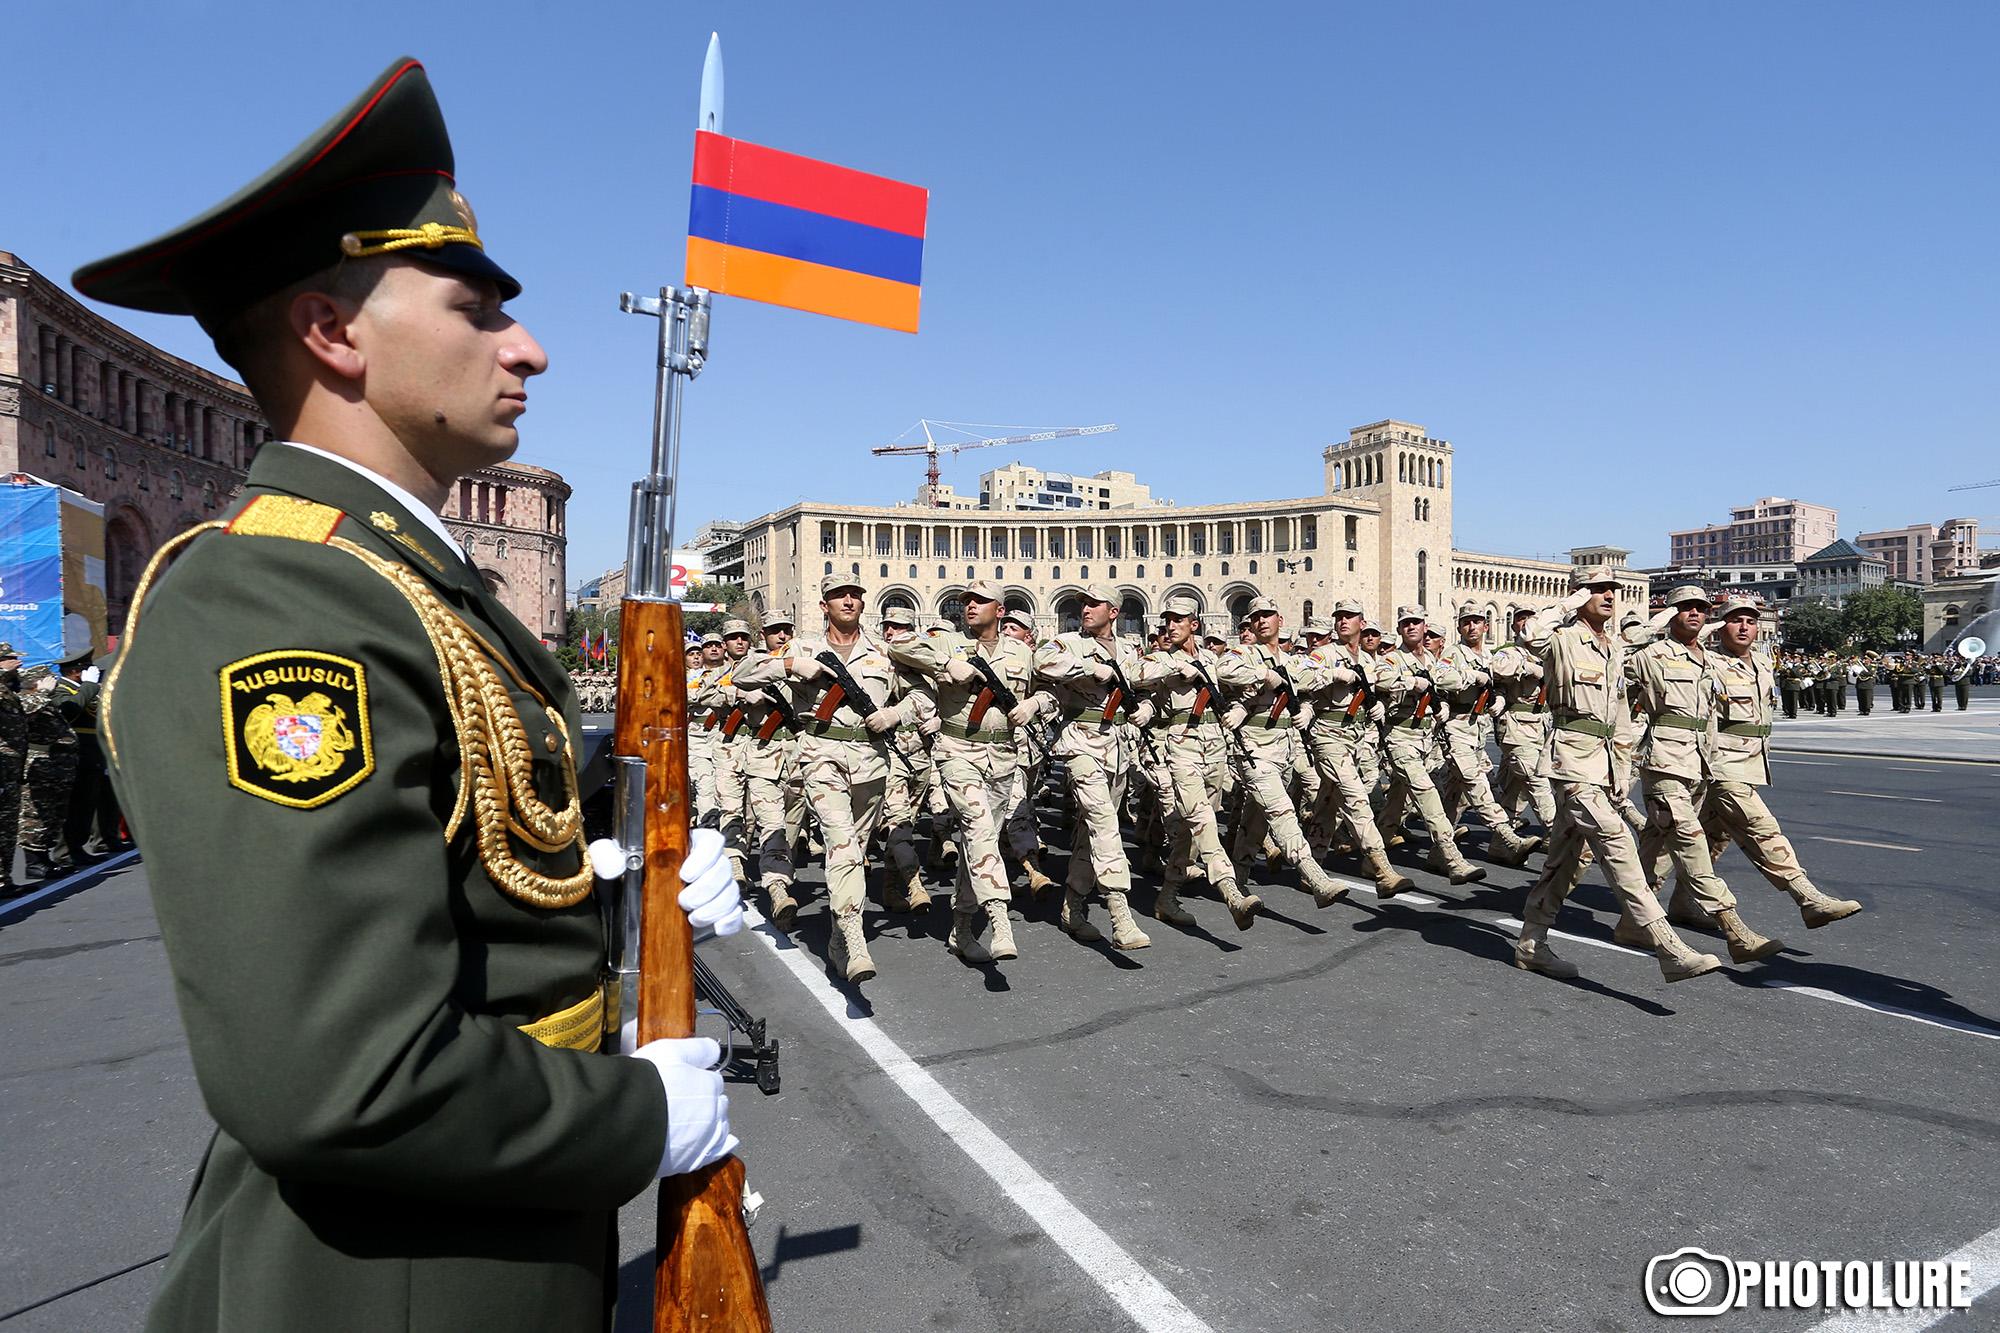 Կայազորային պետություն և ռազմական քեյնսիականություն․ մտորումներ Հայաստանի ապագայի մասին